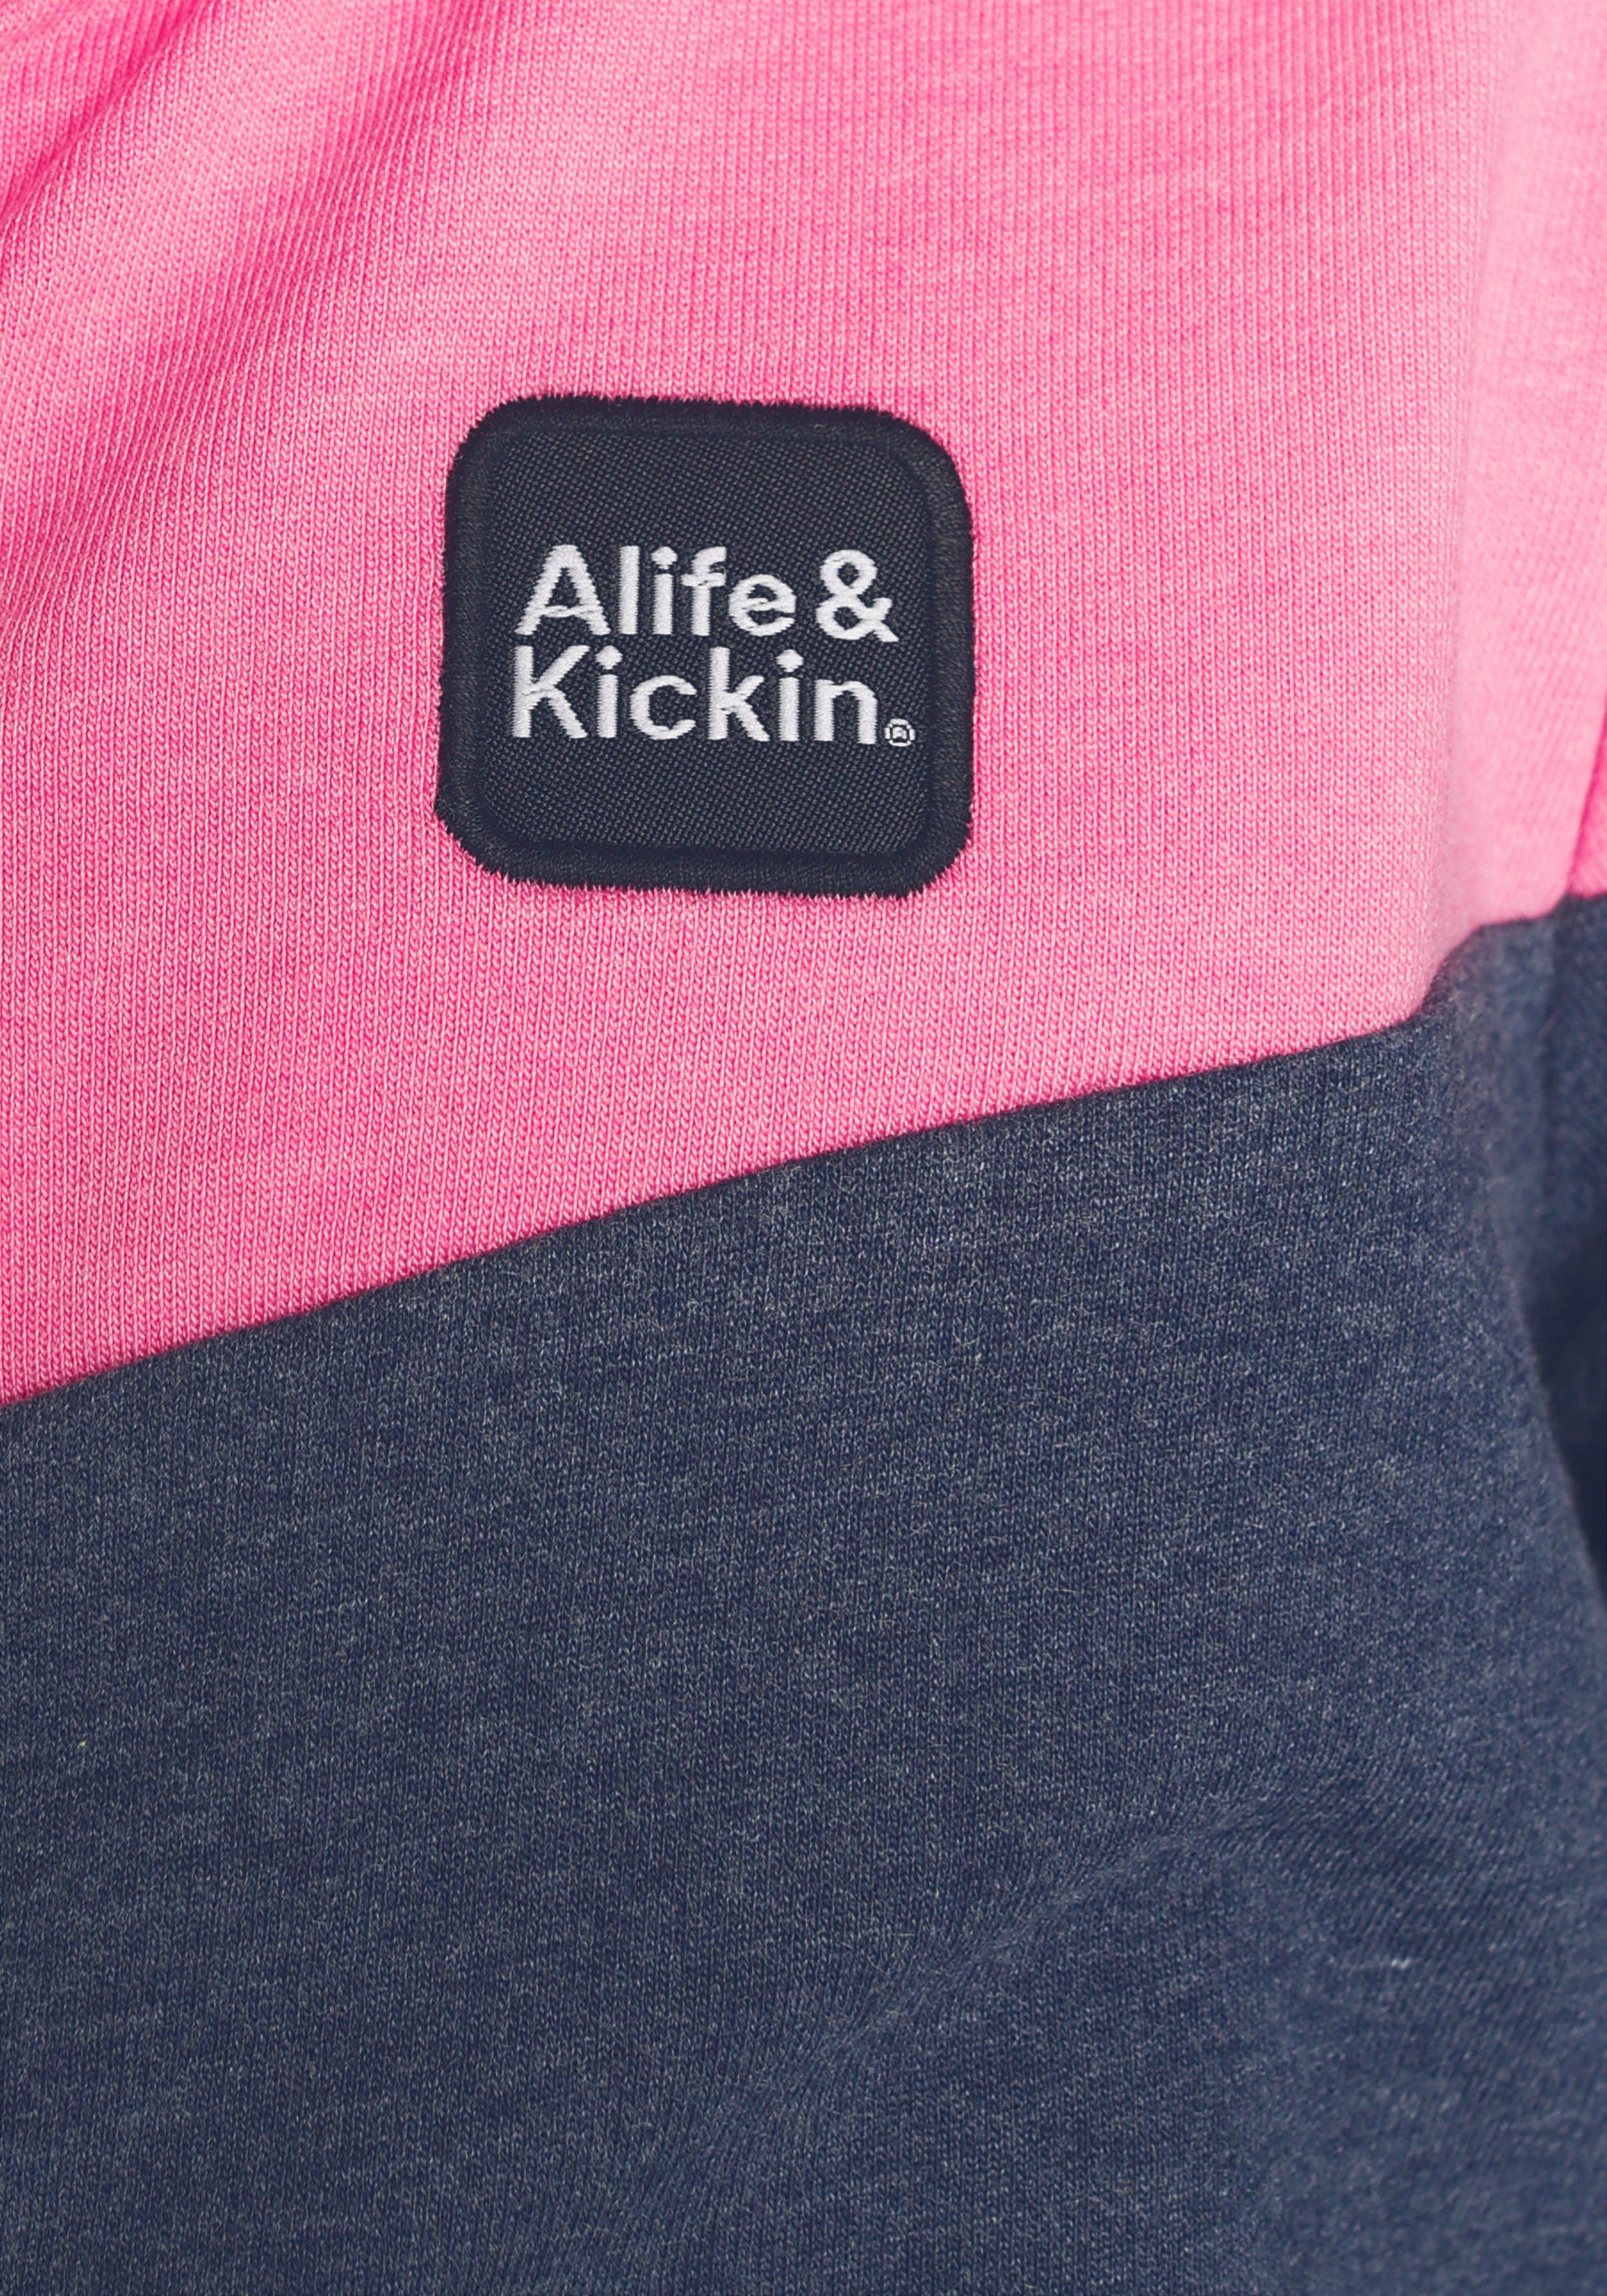 Alife & Kickin coolem Colourblocking mit für MARKE! Sweatjacke Kickin NEUE & Kids. Alife